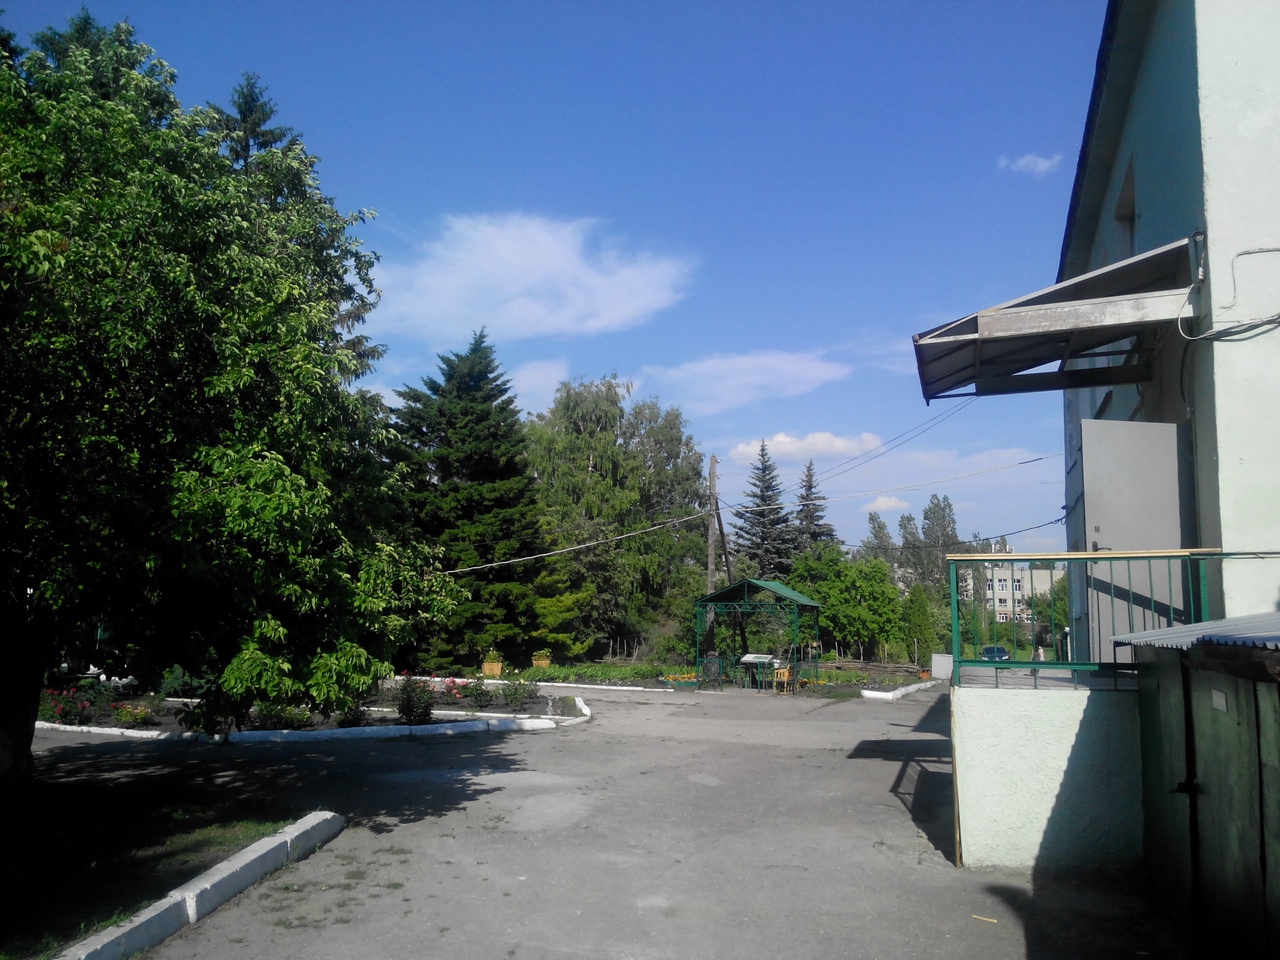 Областной детский экологический центр (бывший "Сад Юннатов")